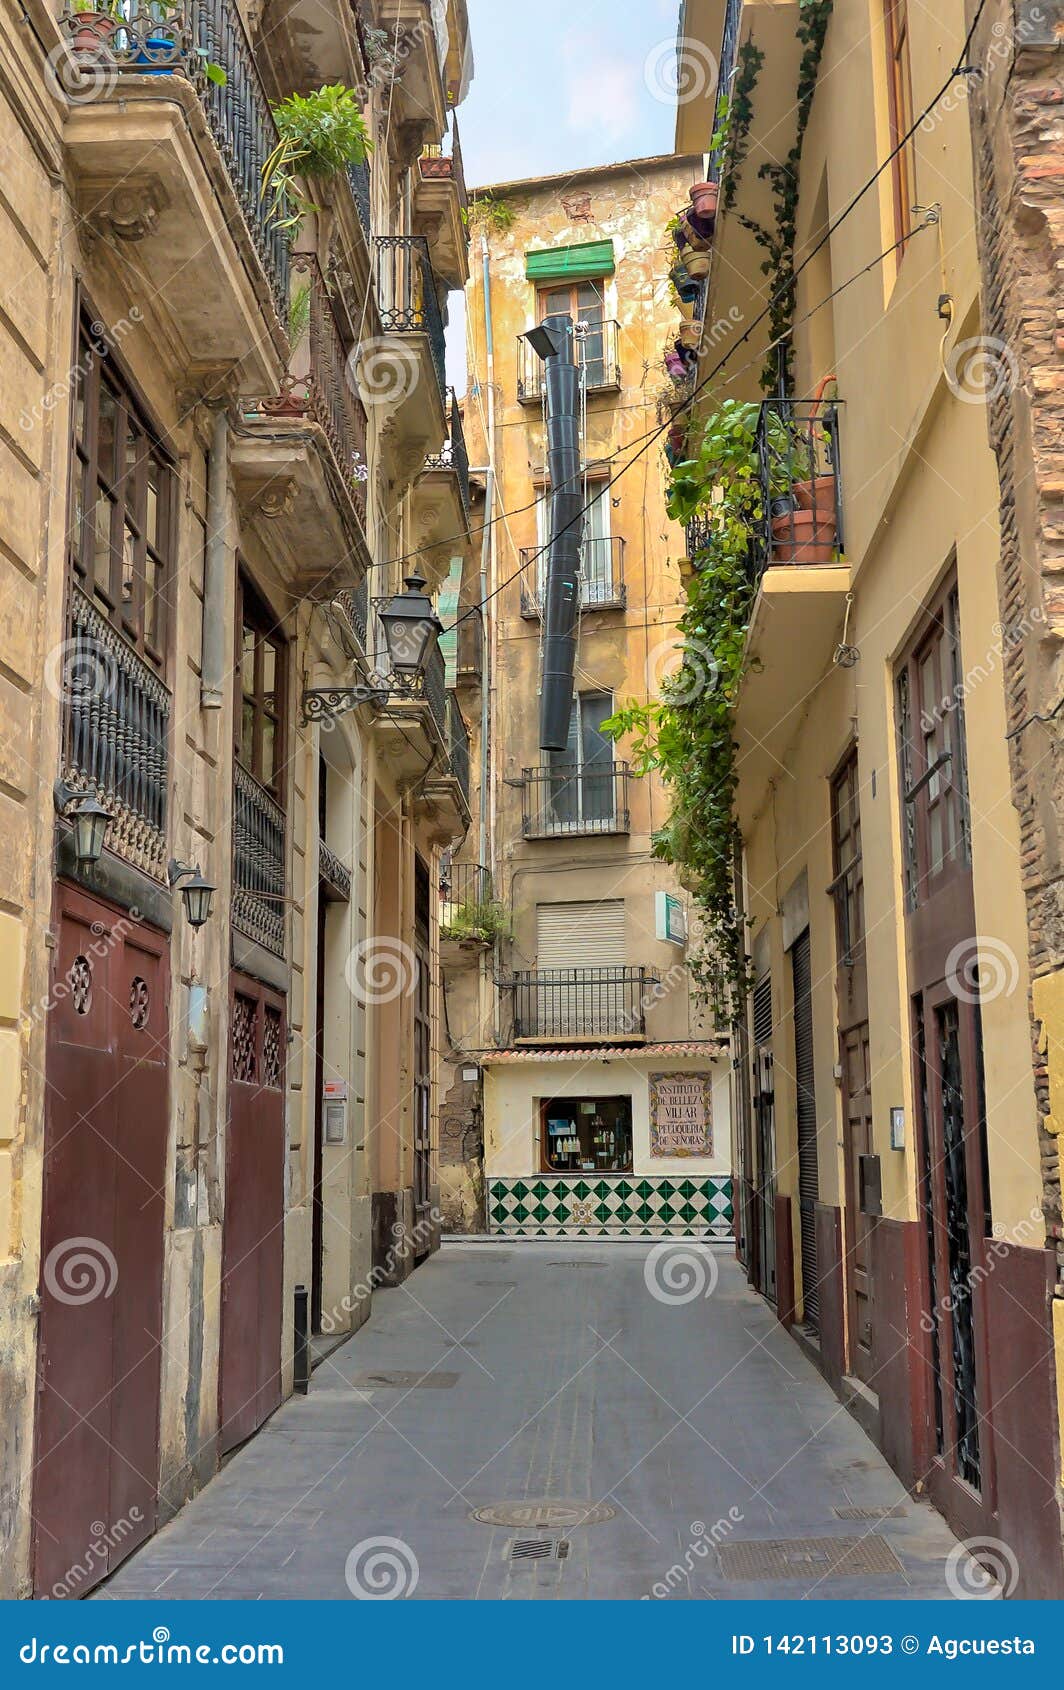 Quiet Alleyway in Valencia, Spain Editorial Stock Photo - Image of ...